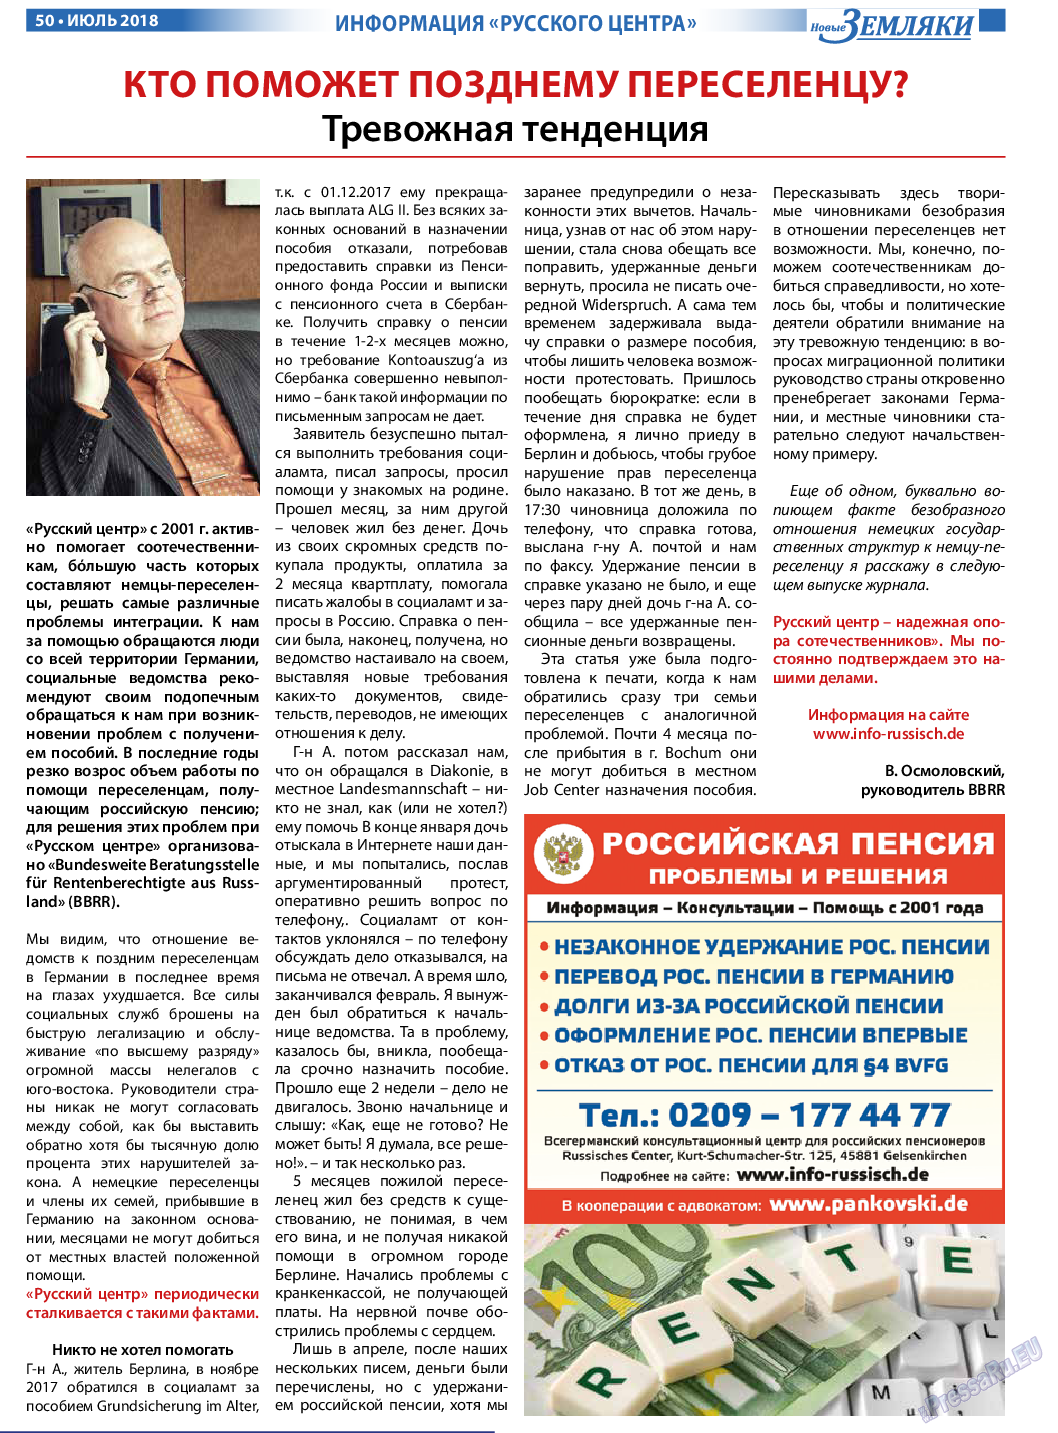 Новые Земляки, газета. 2018 №7 стр.50